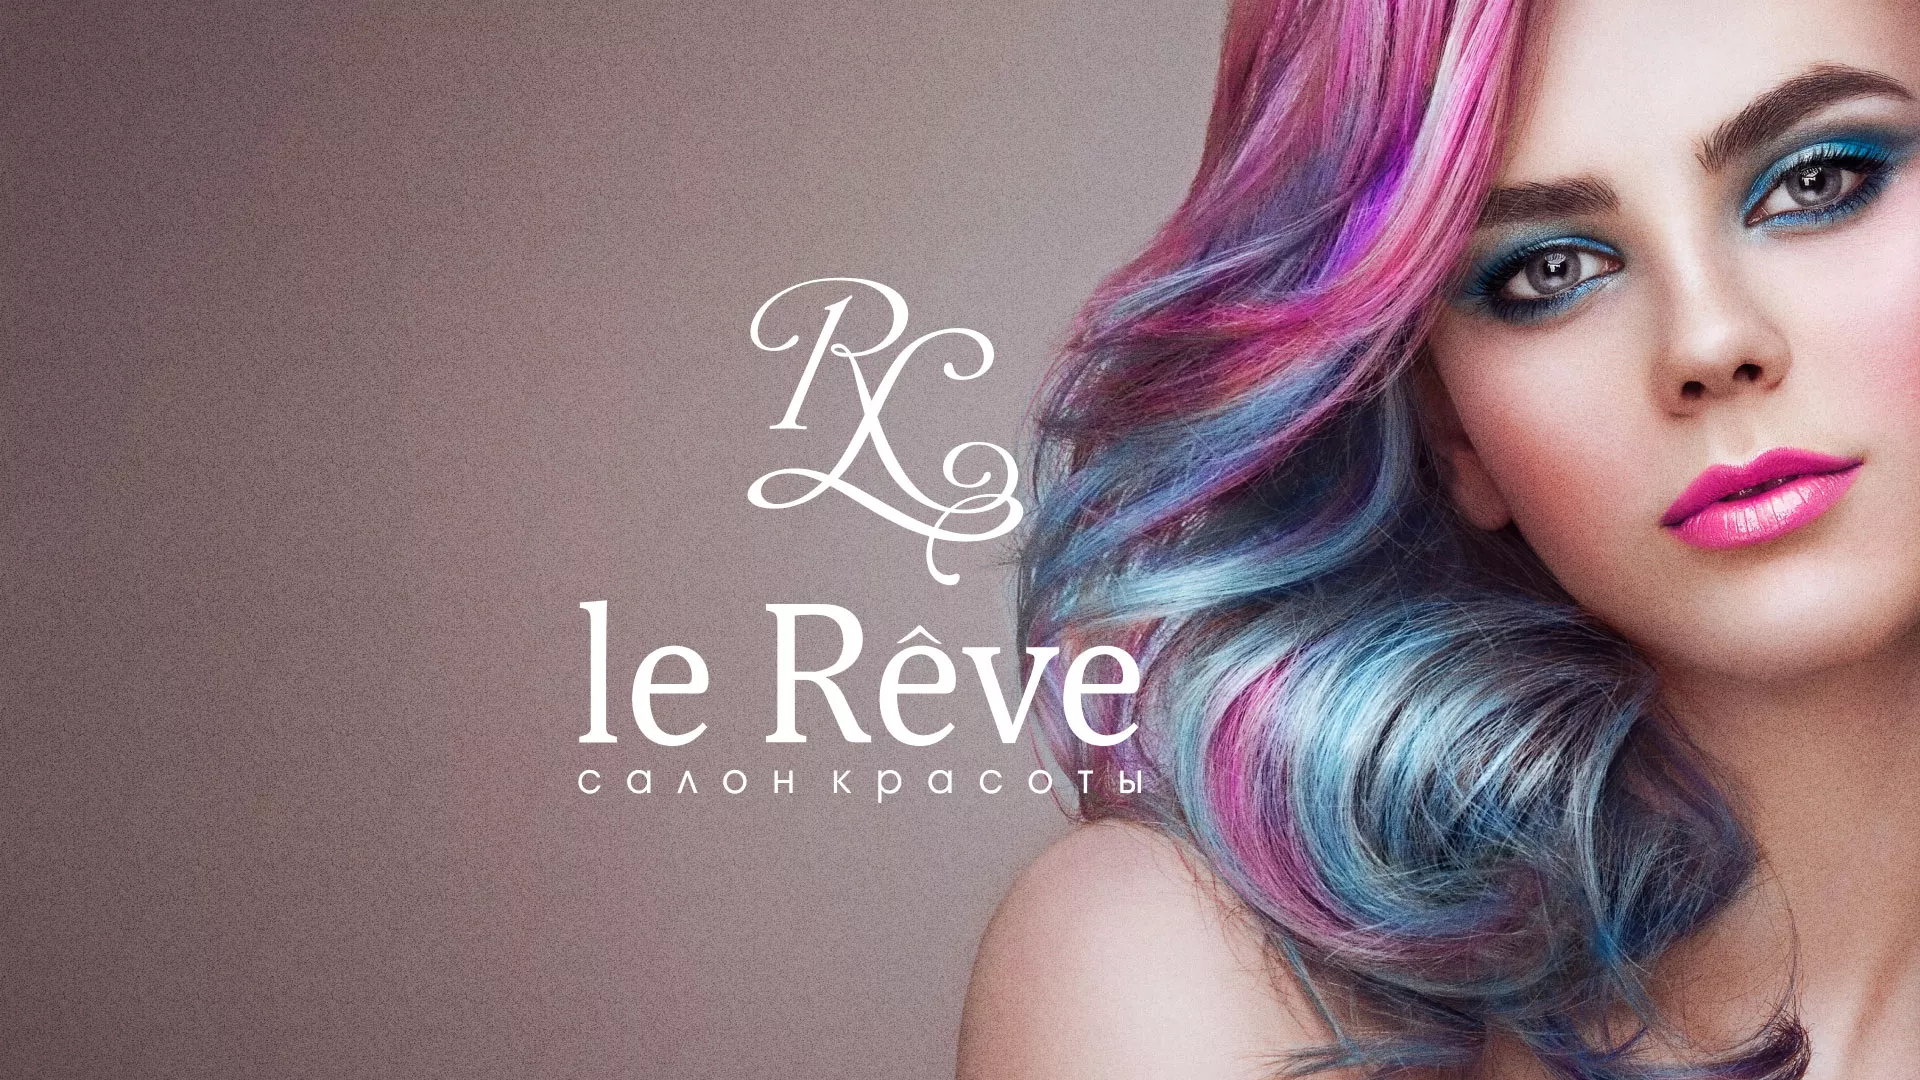 Создание сайта для салона красоты «Le Reve» в Емве